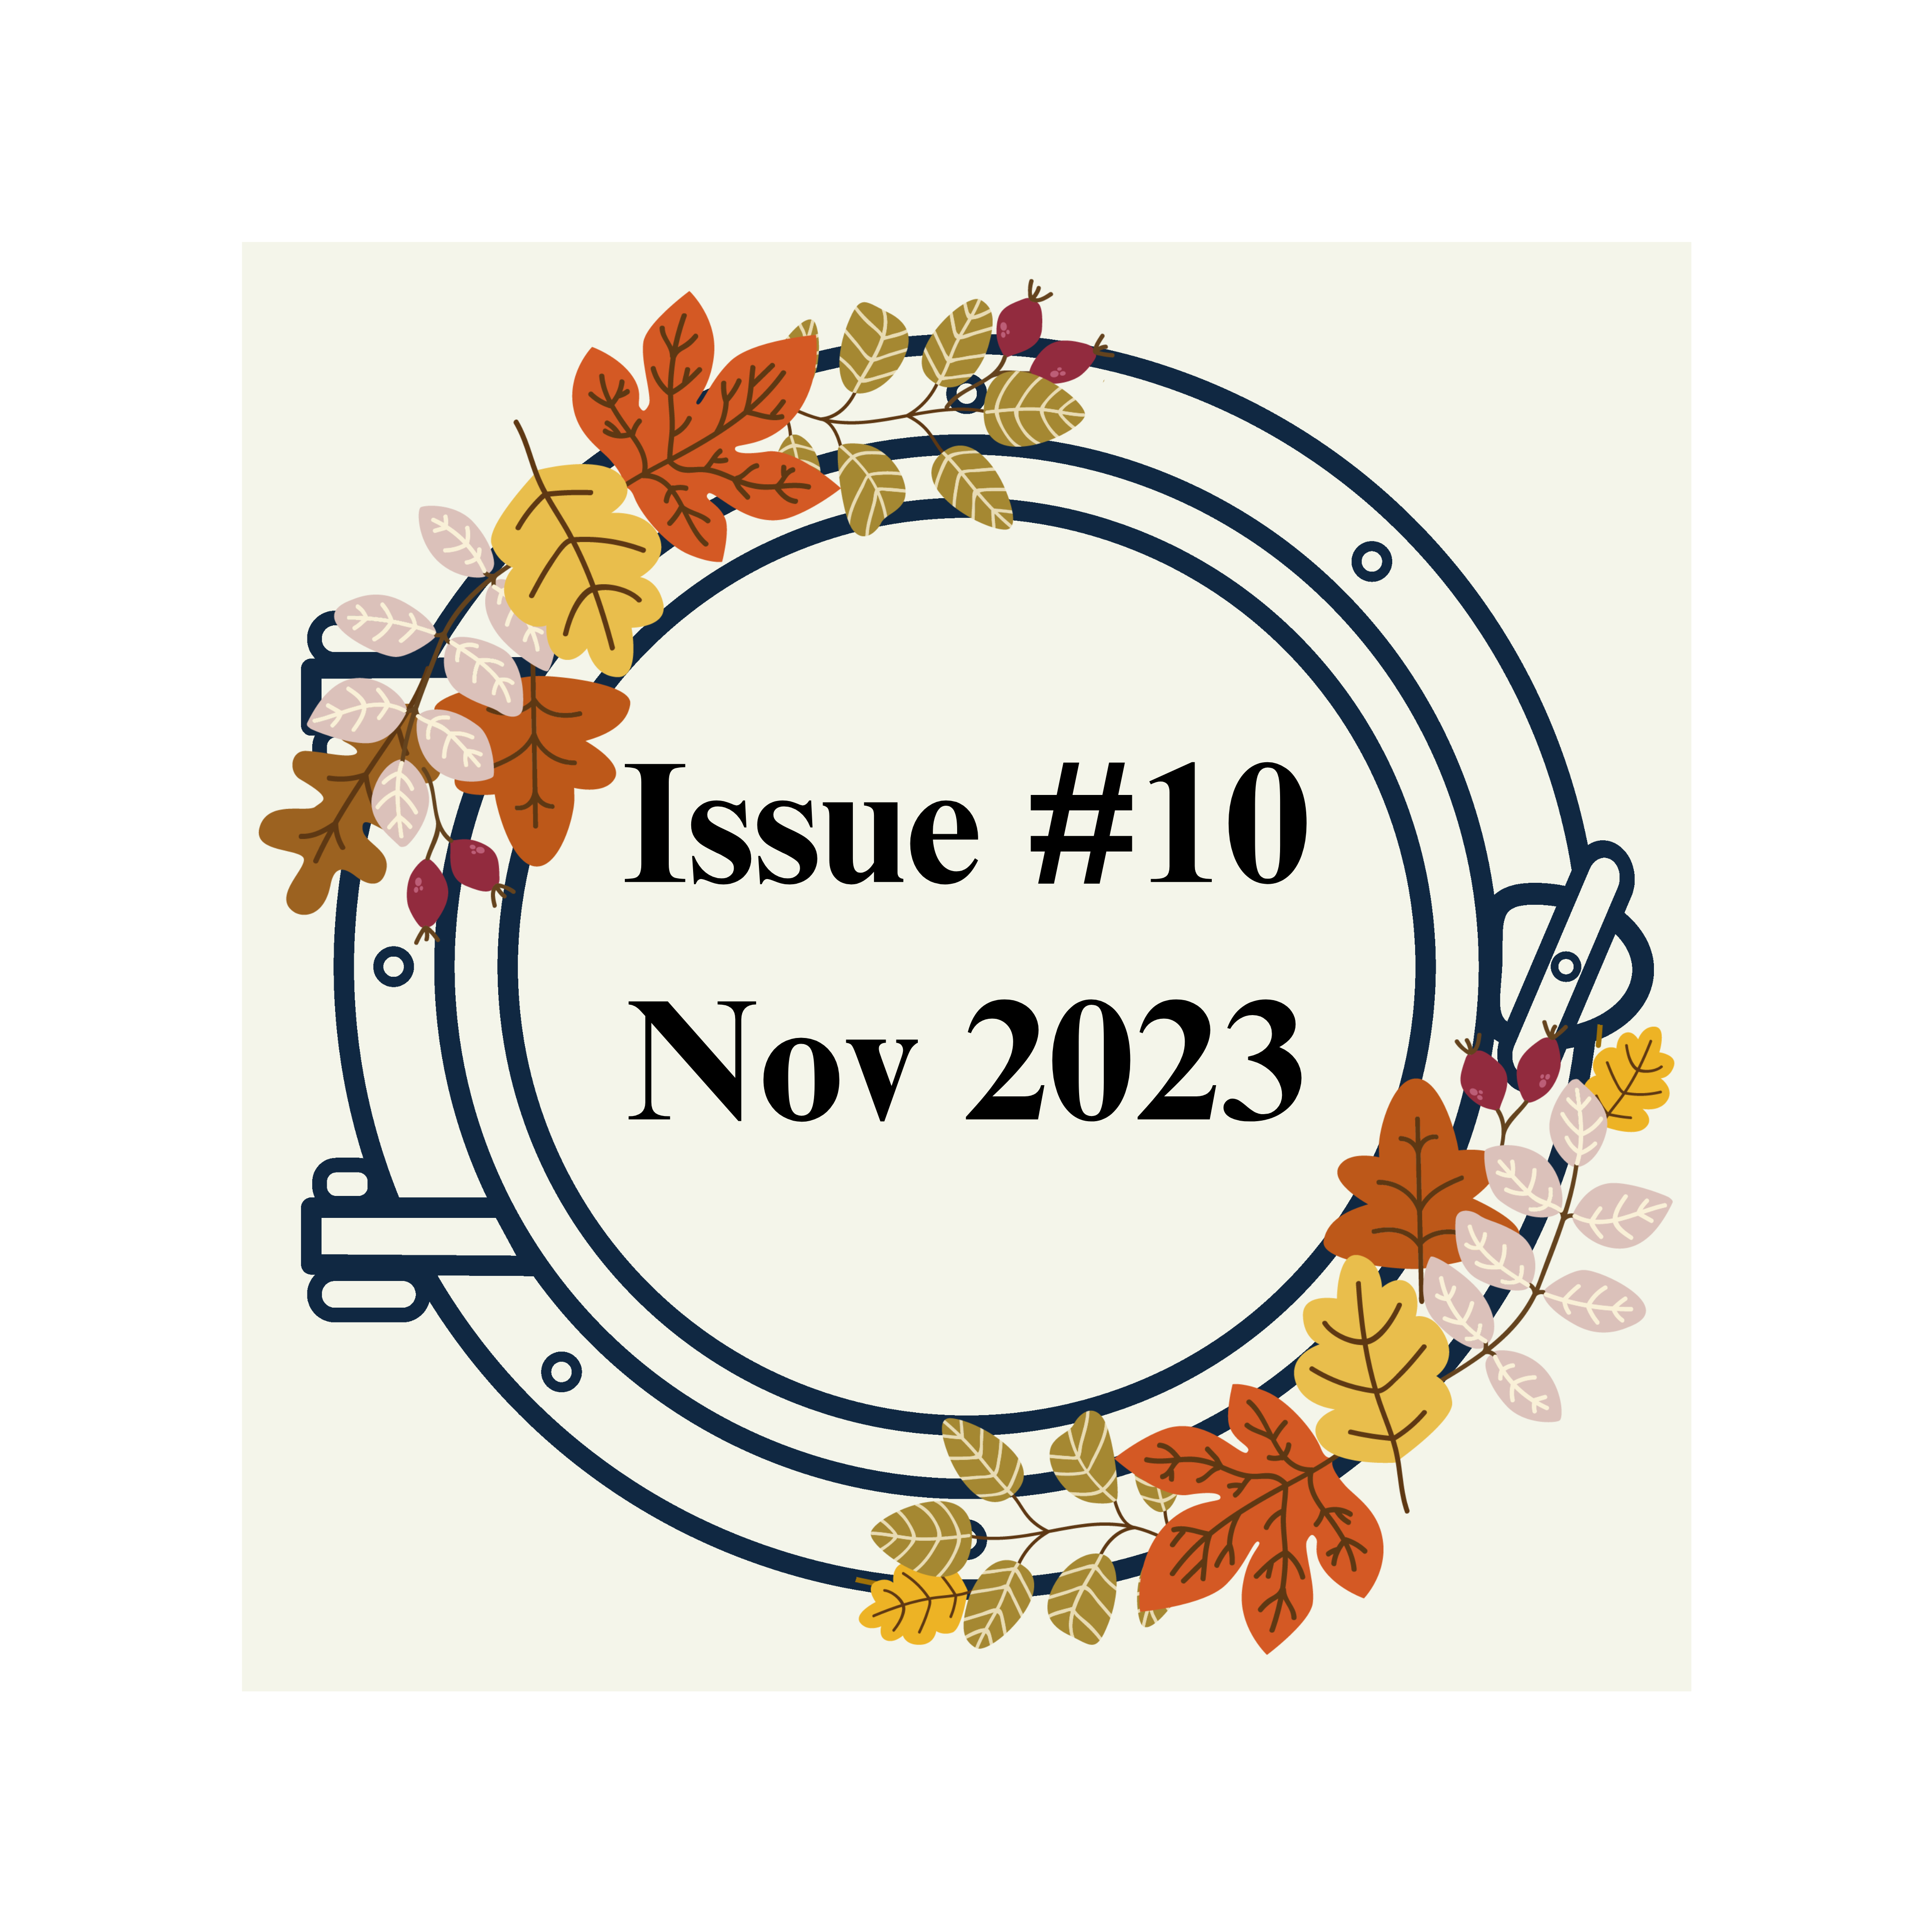 ISSUE #10 Nov 2023